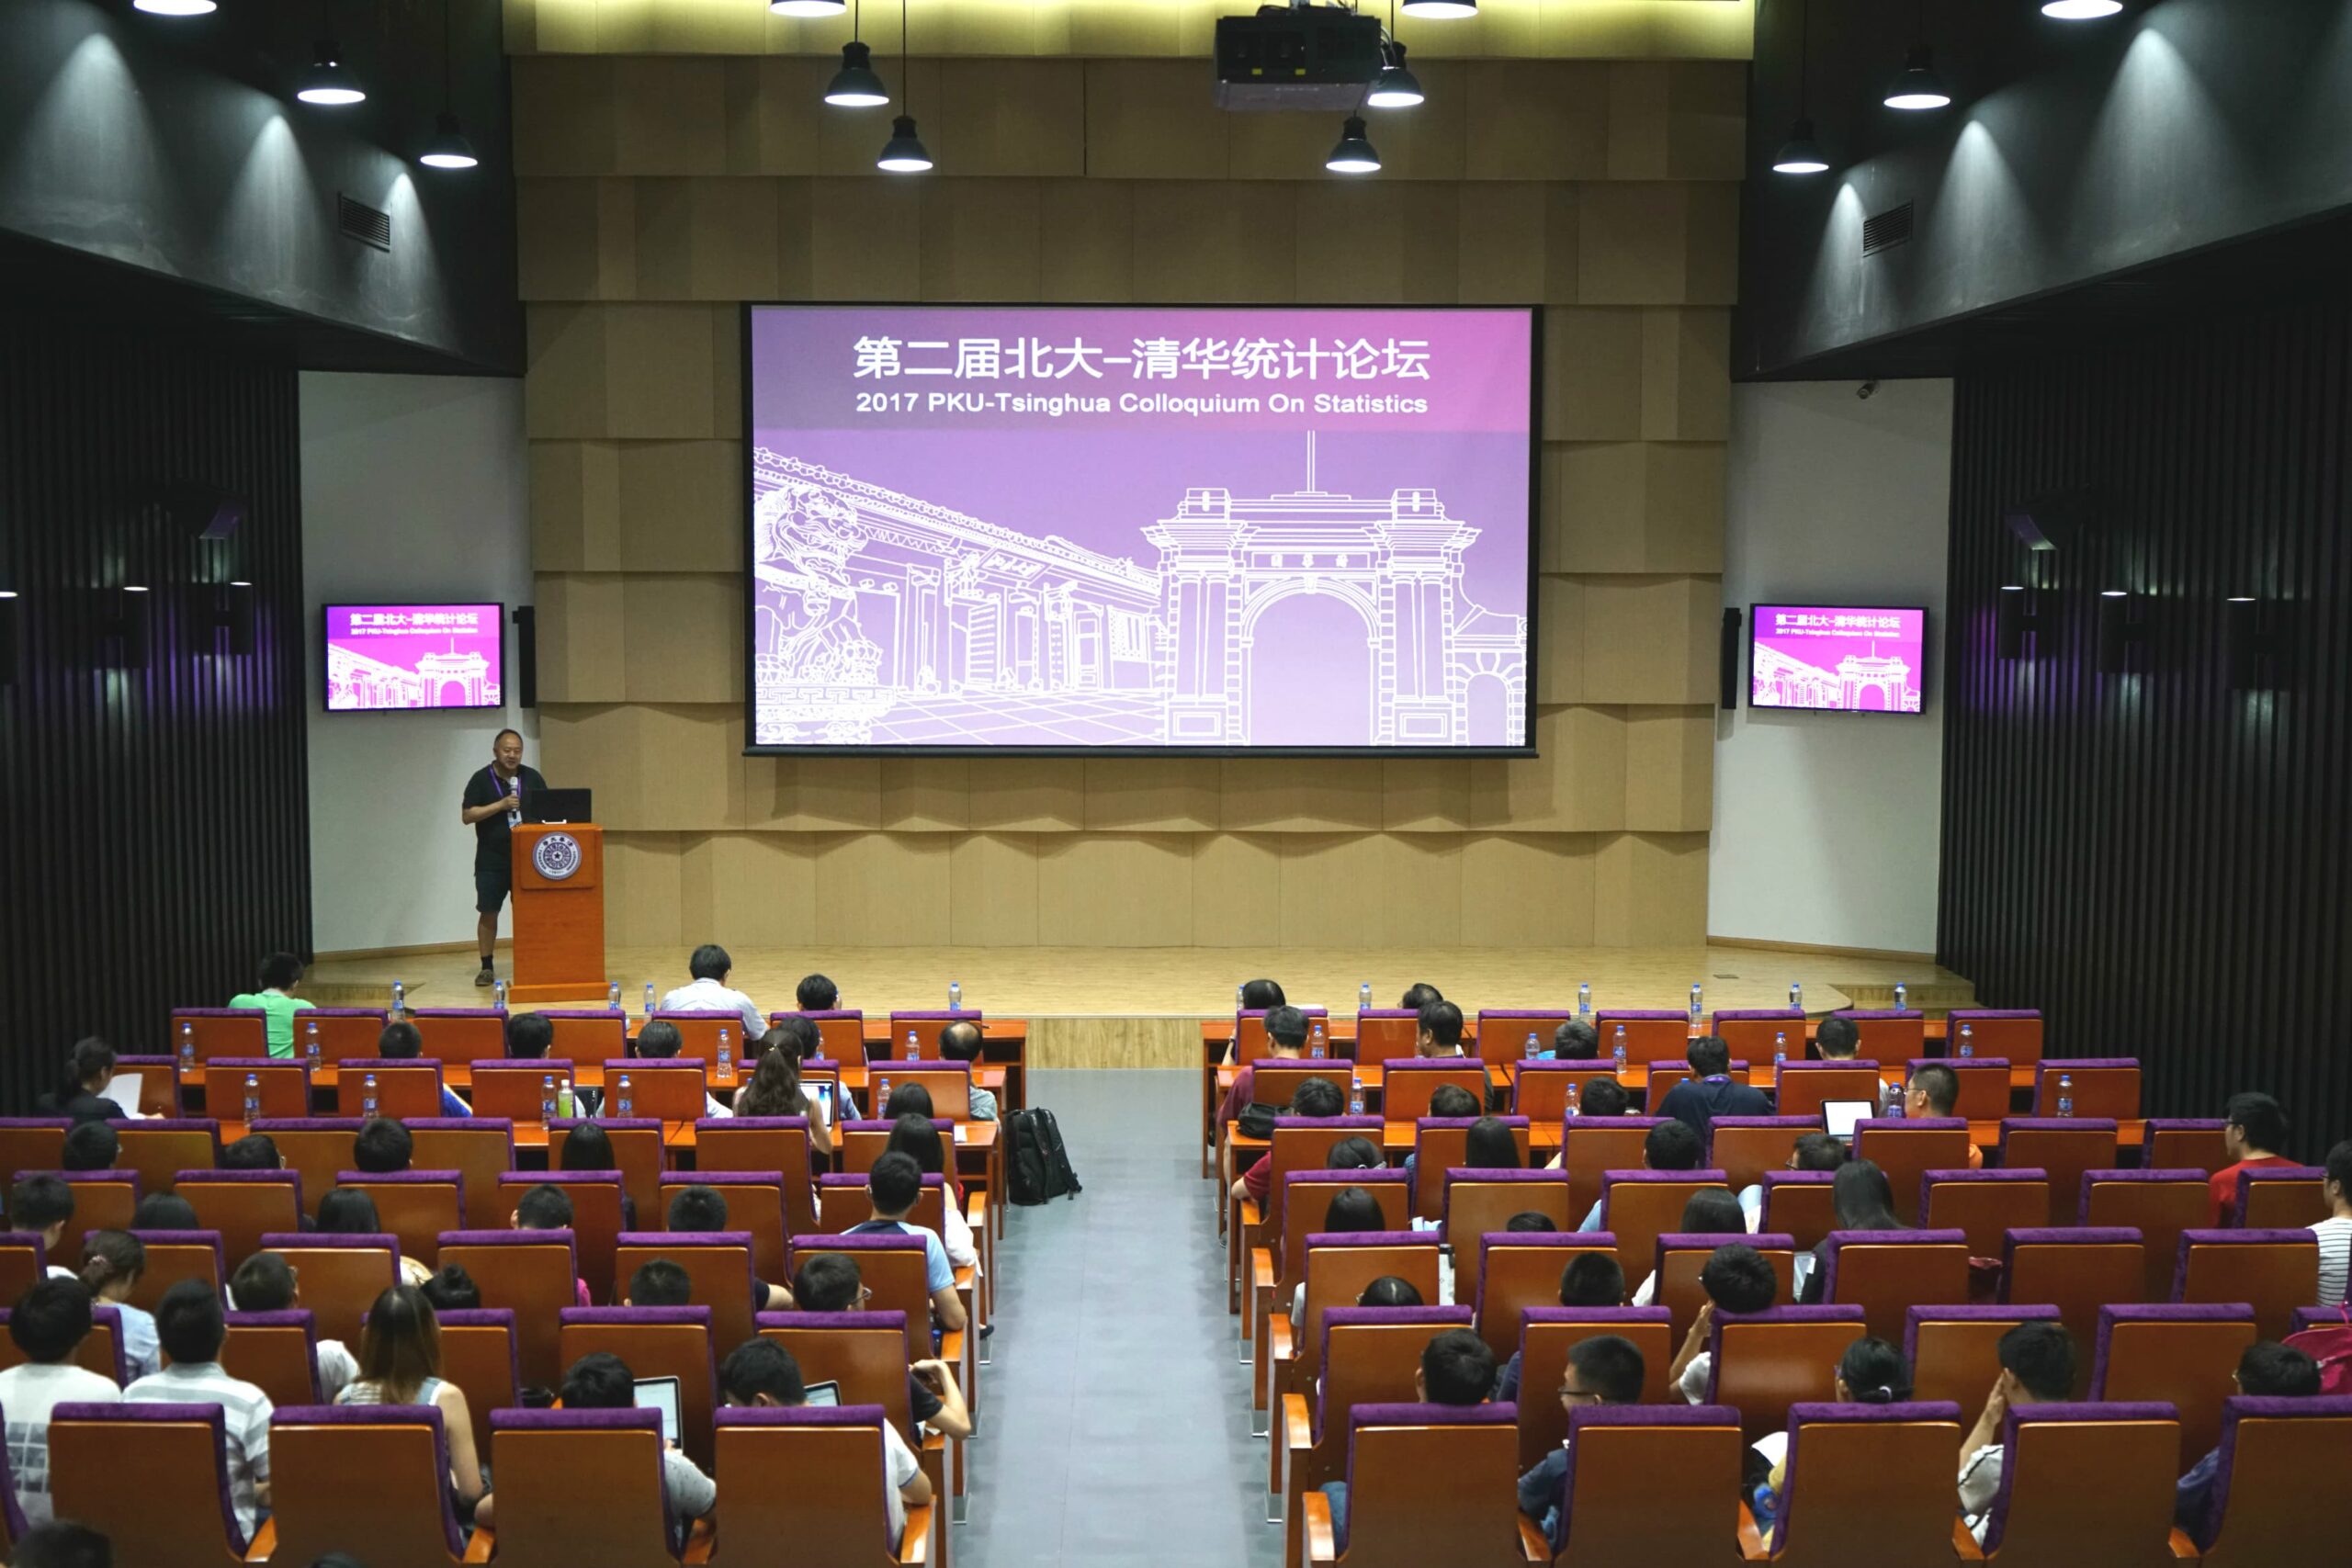 【学术活动】第二届北大-清华统计论坛成功举办